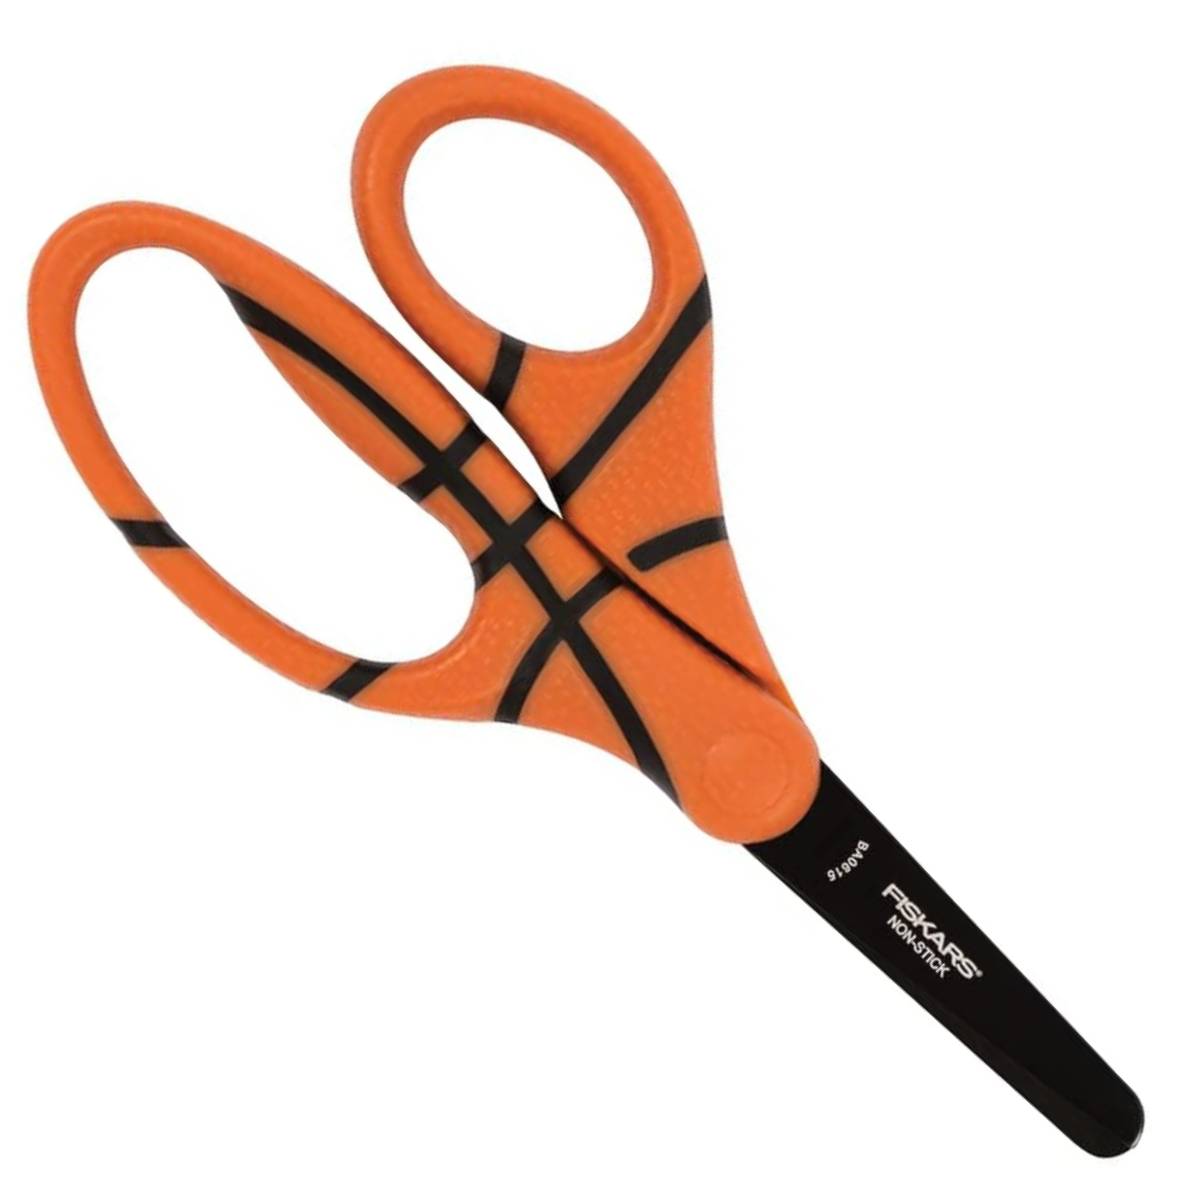 Children's scissors 13 cm Basketball 6yrs+ Fiskars